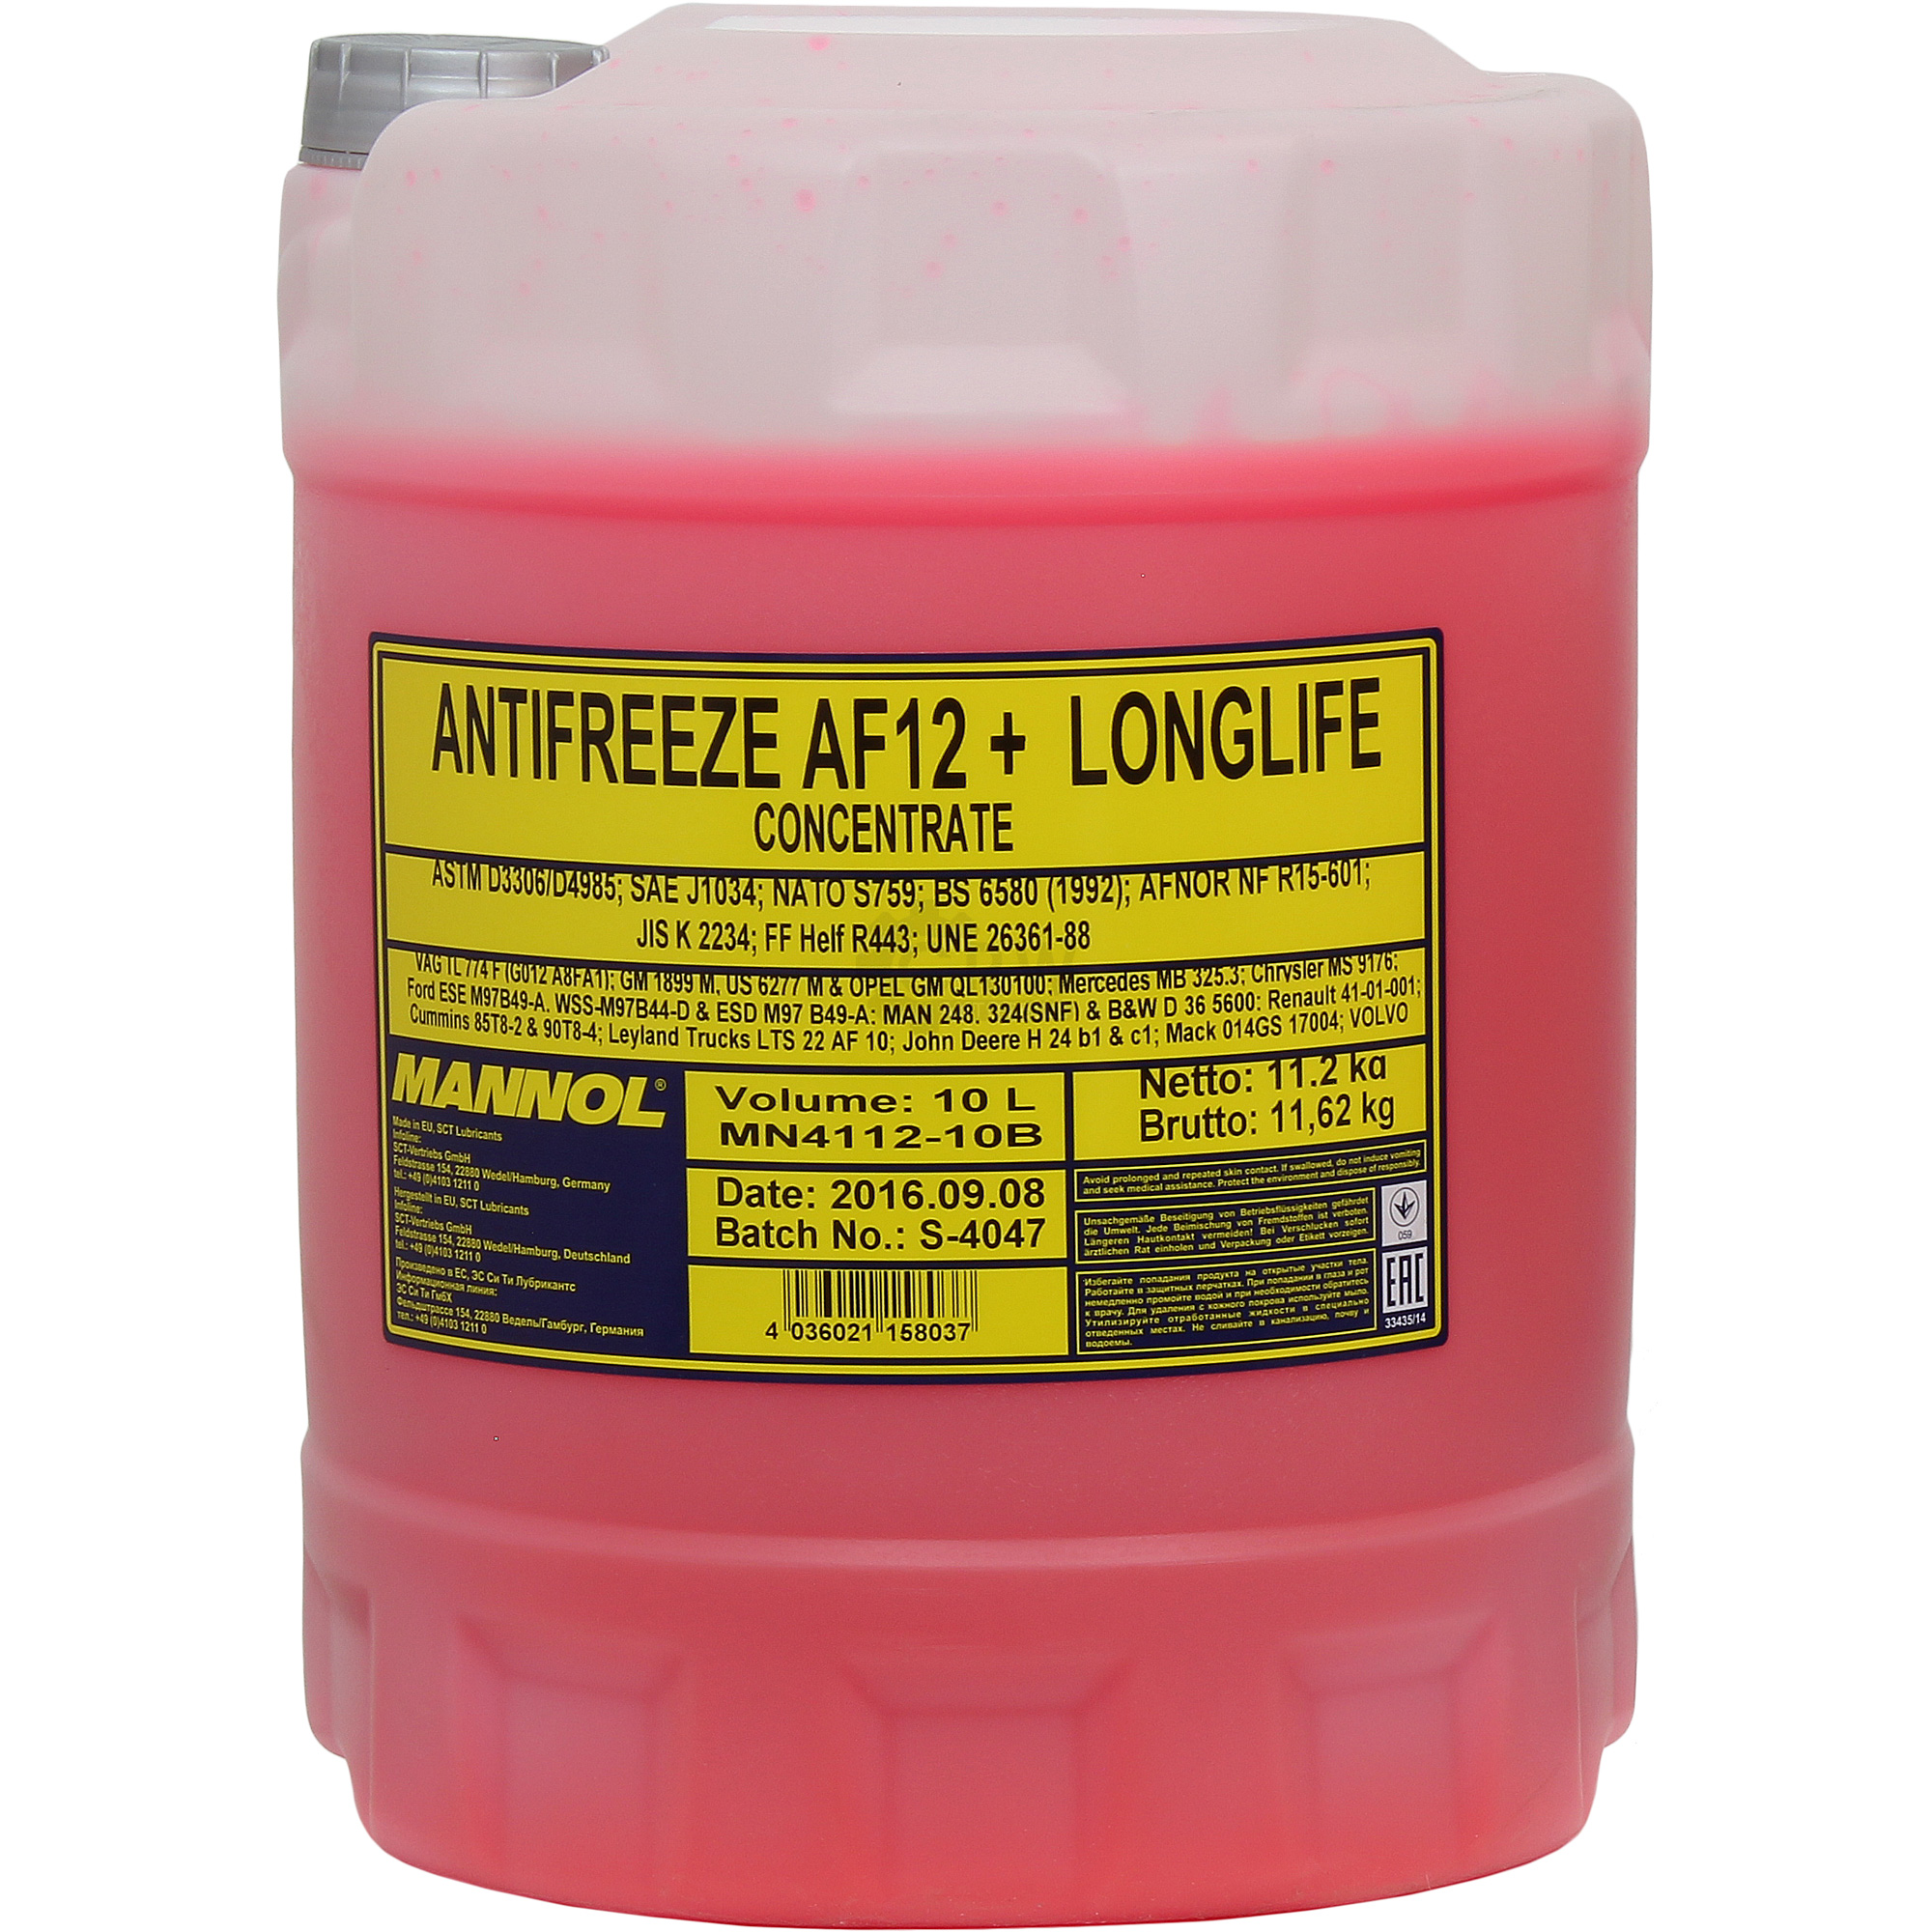 MANNOL Longlife Antifreeze AF12+ Kühlerfrostschutz Konzentrat rot, G12+ /  G30, Kühlerfrostschutz, Schmierstoffe